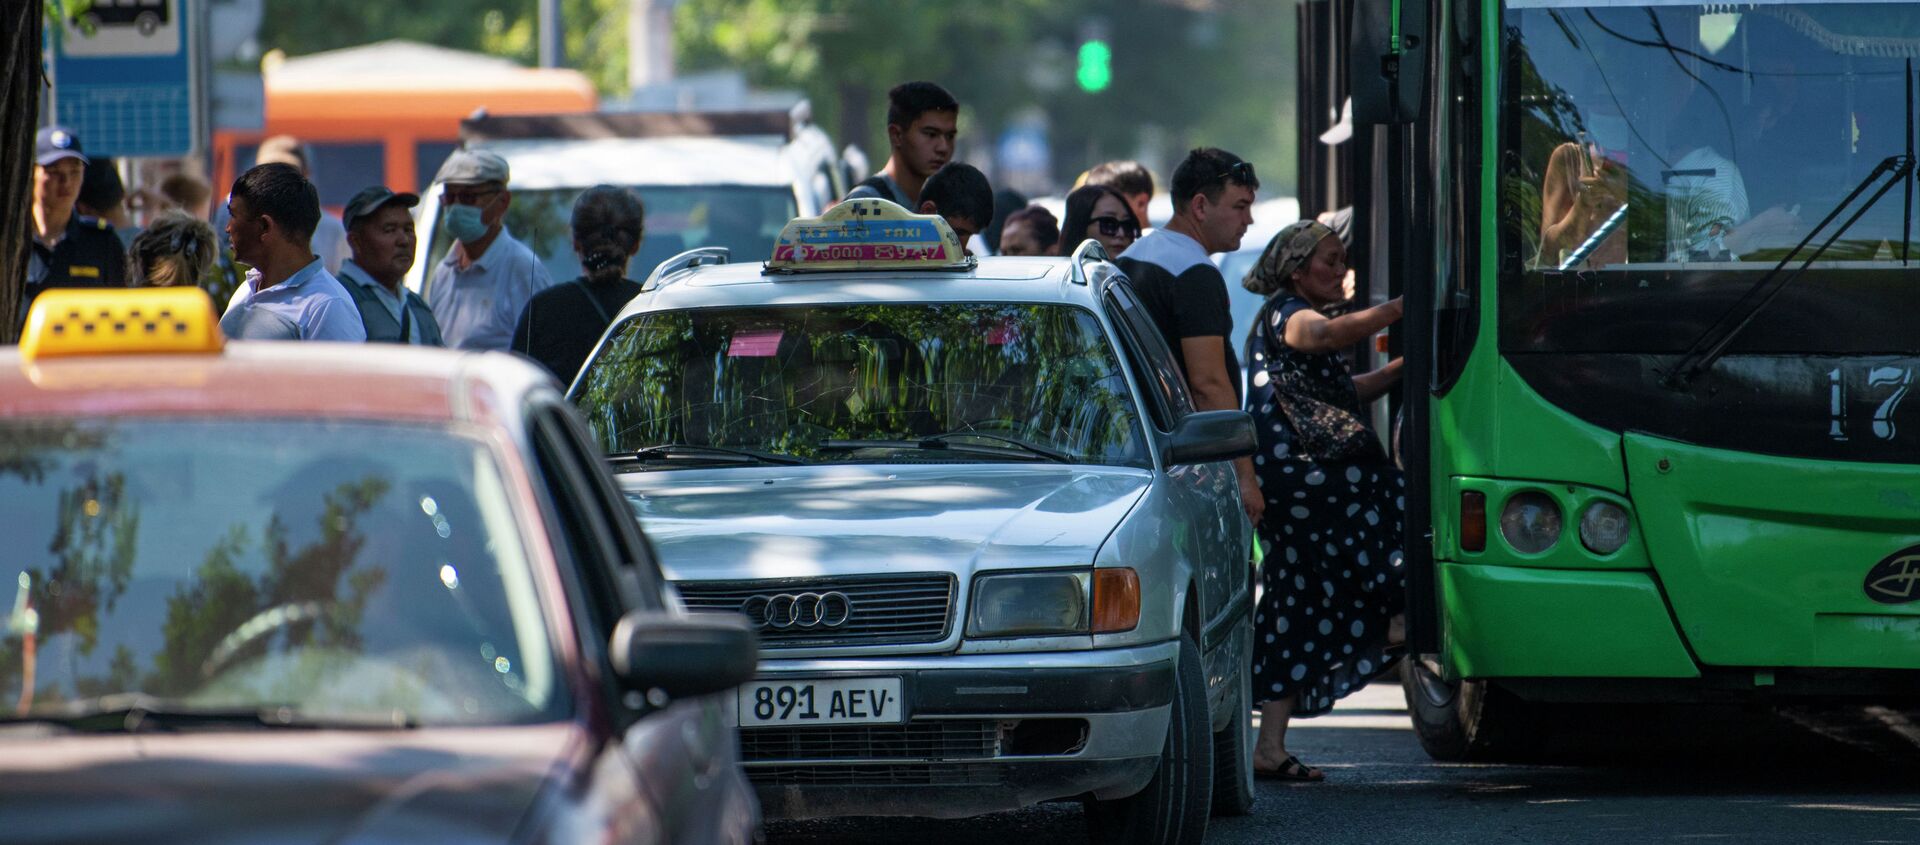 Ситуация в Бишкеке из-за забастовок водителей маршрутного такси - Sputnik Кыргызстан, 1920, 02.06.2021